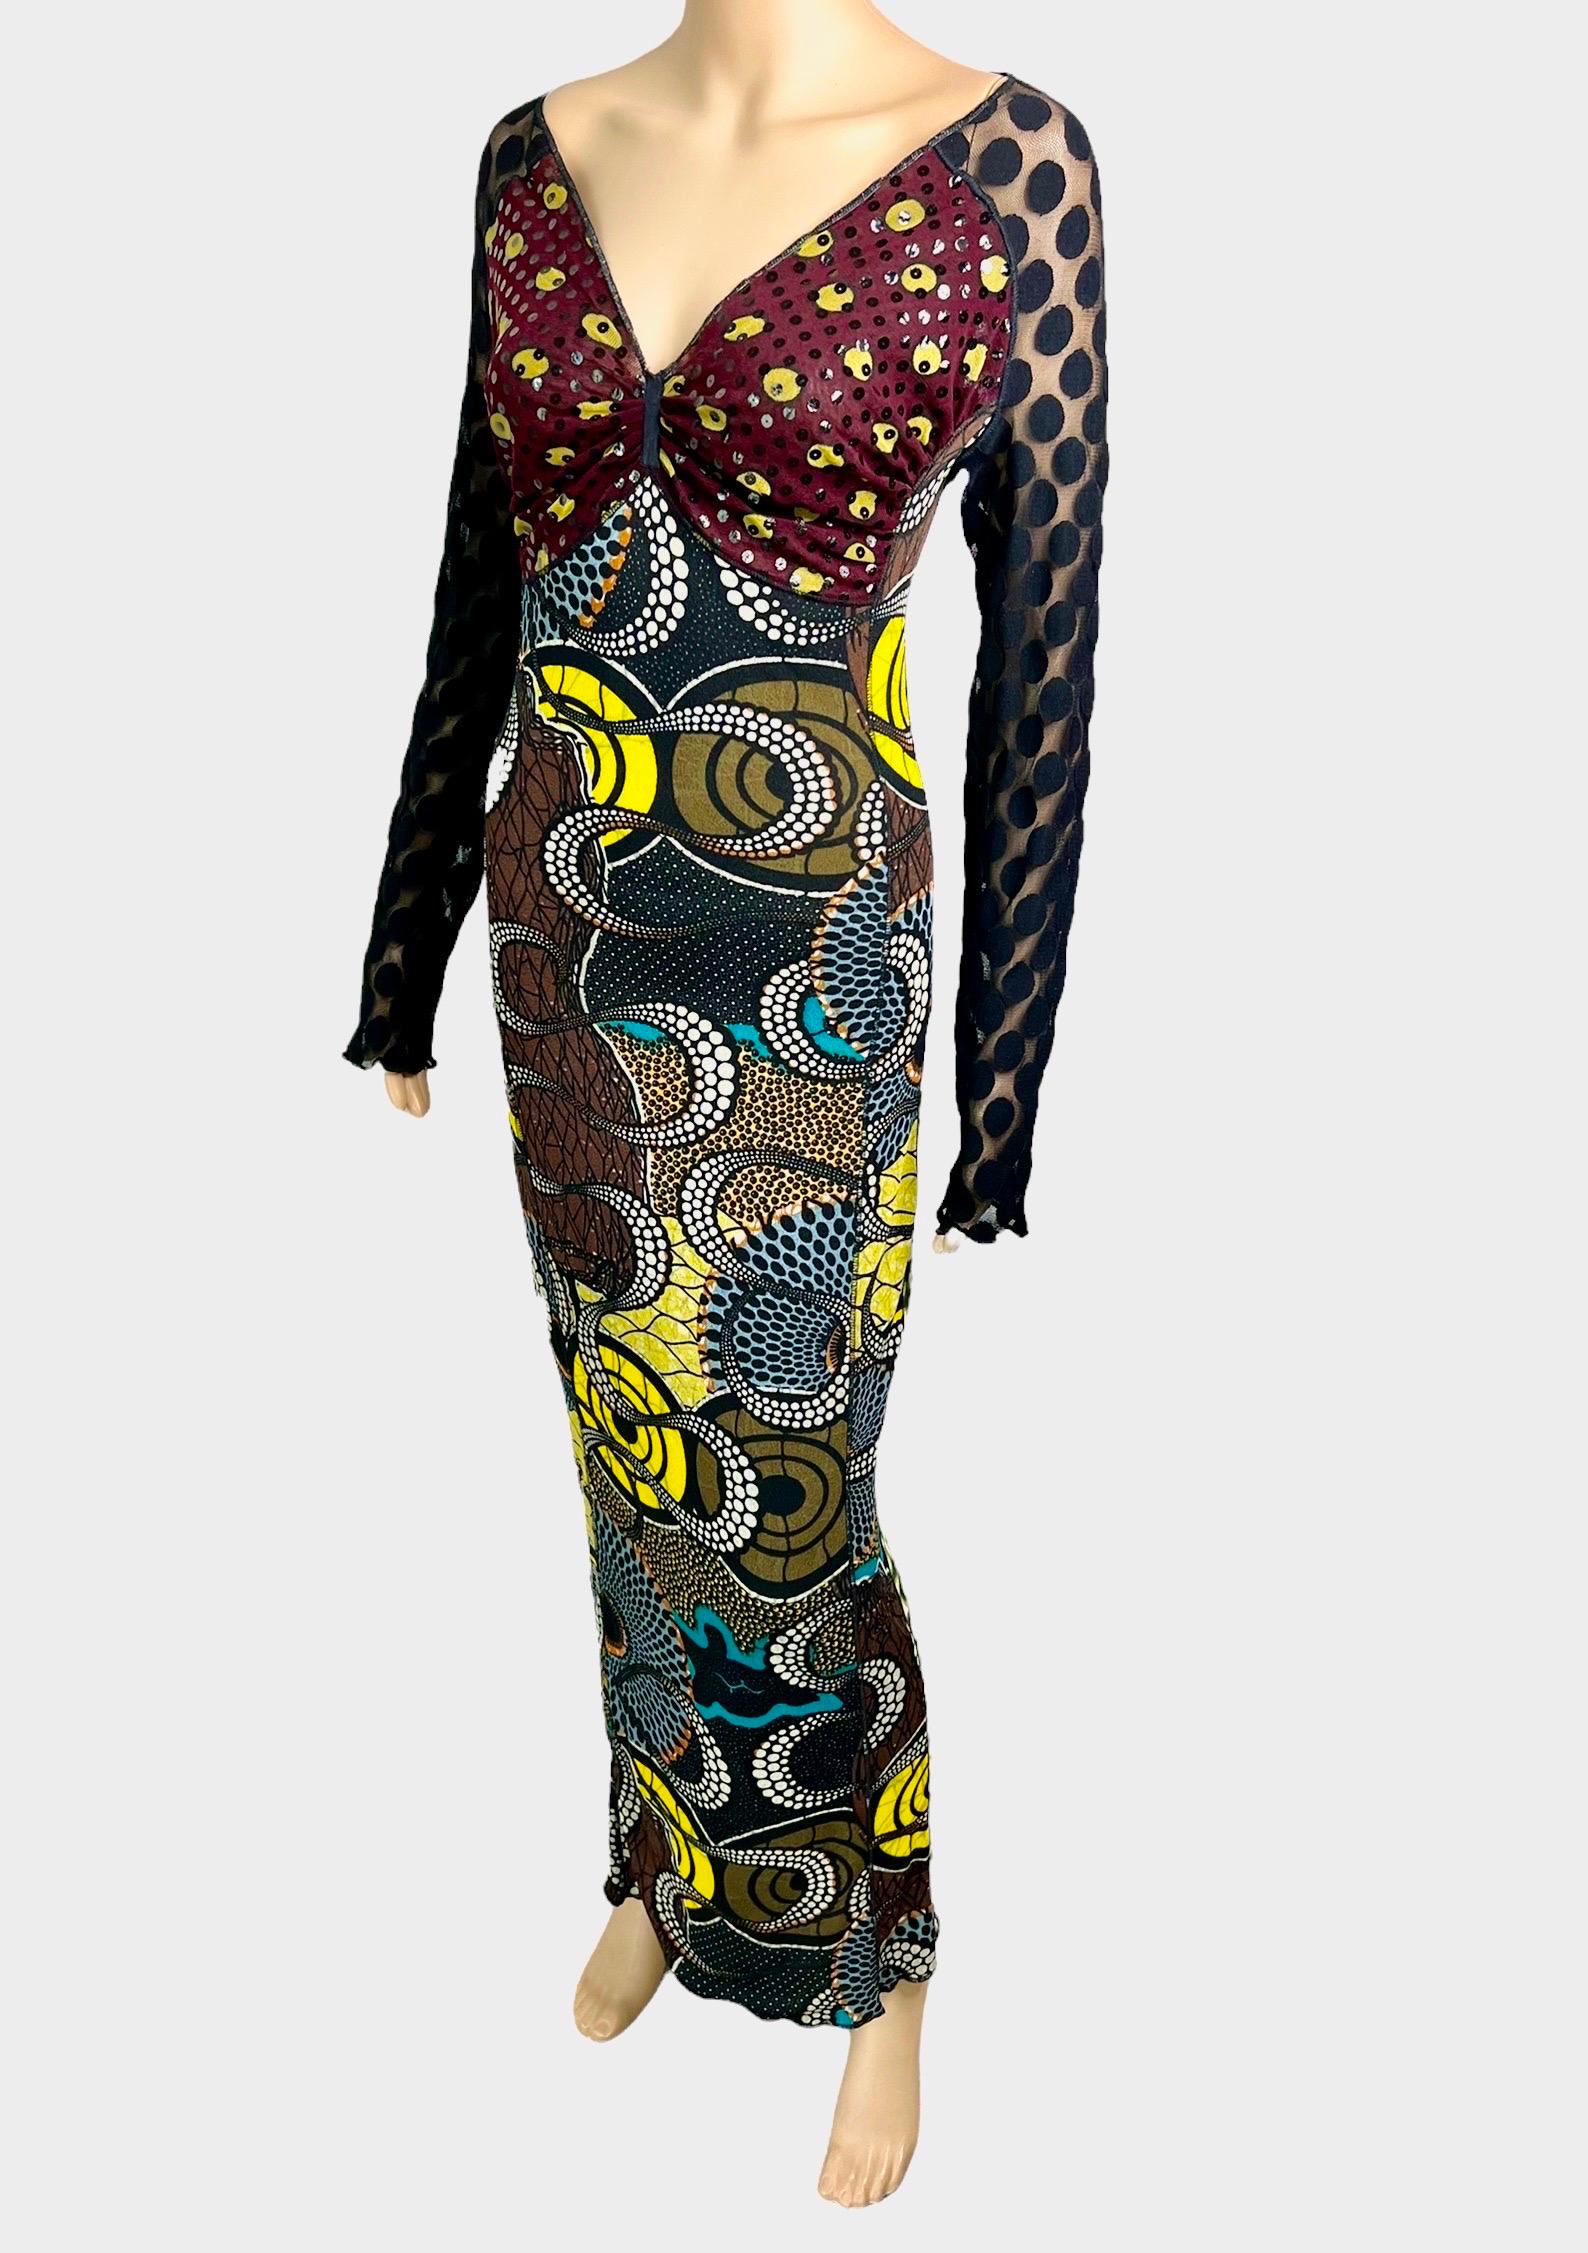 Jean Paul Gaultier Soleil c.1996 Op Art Circle Dots Print Cutout Back Maxi Dress For Sale 2